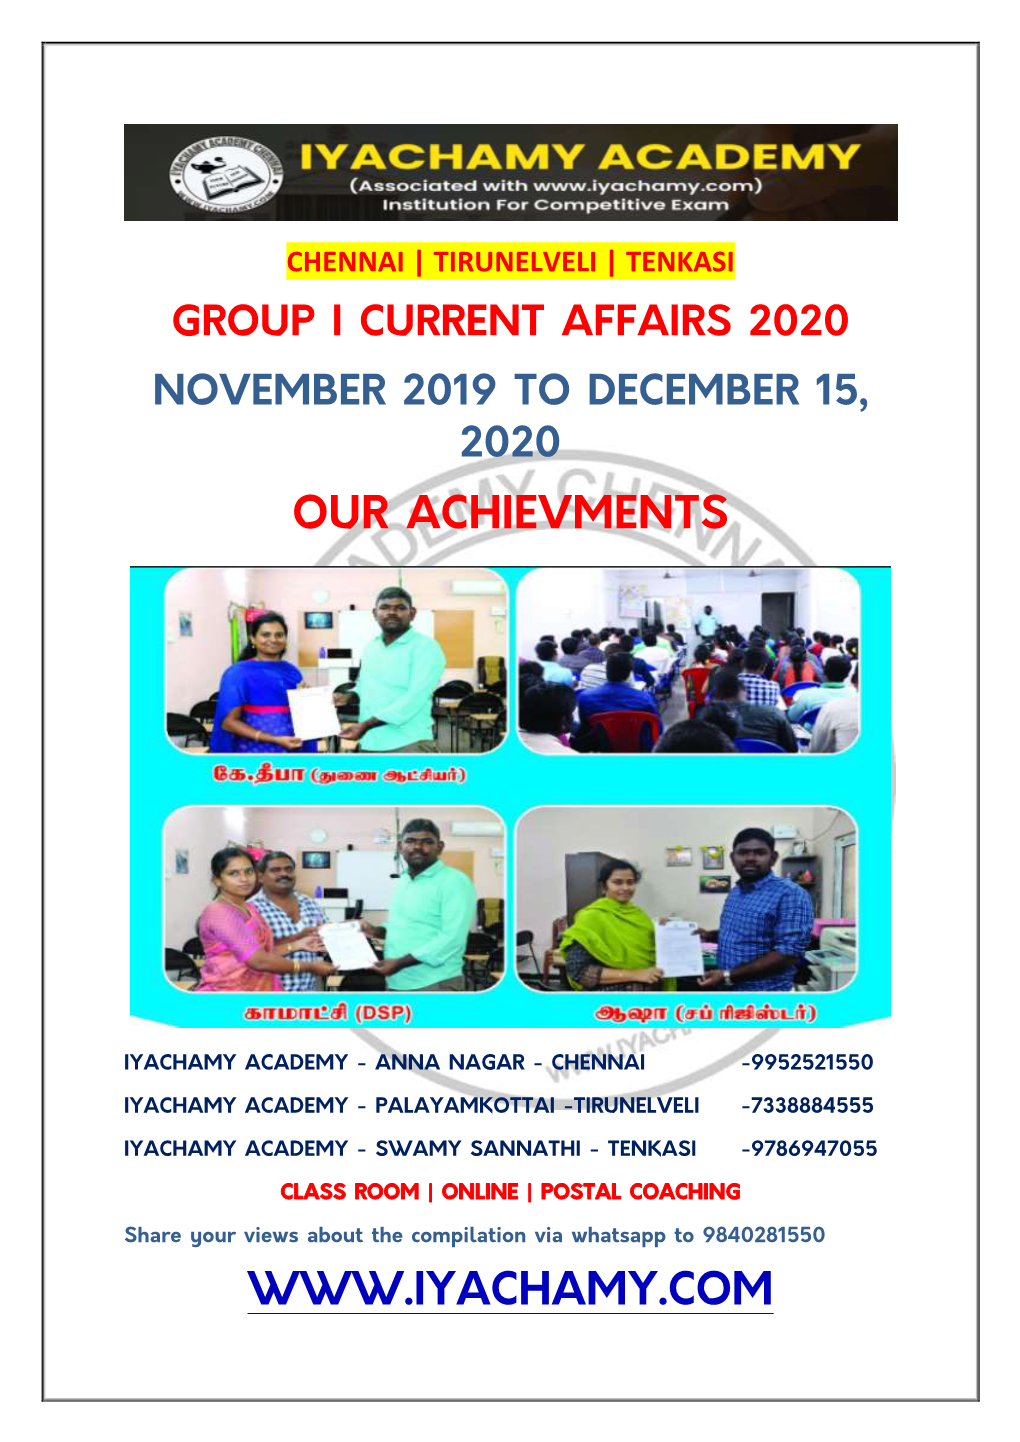 Chennai | Tirunelveli | Tenkasi Group I Current Affairs 2020 November 2019 to December 15, 2020 Our Achievments